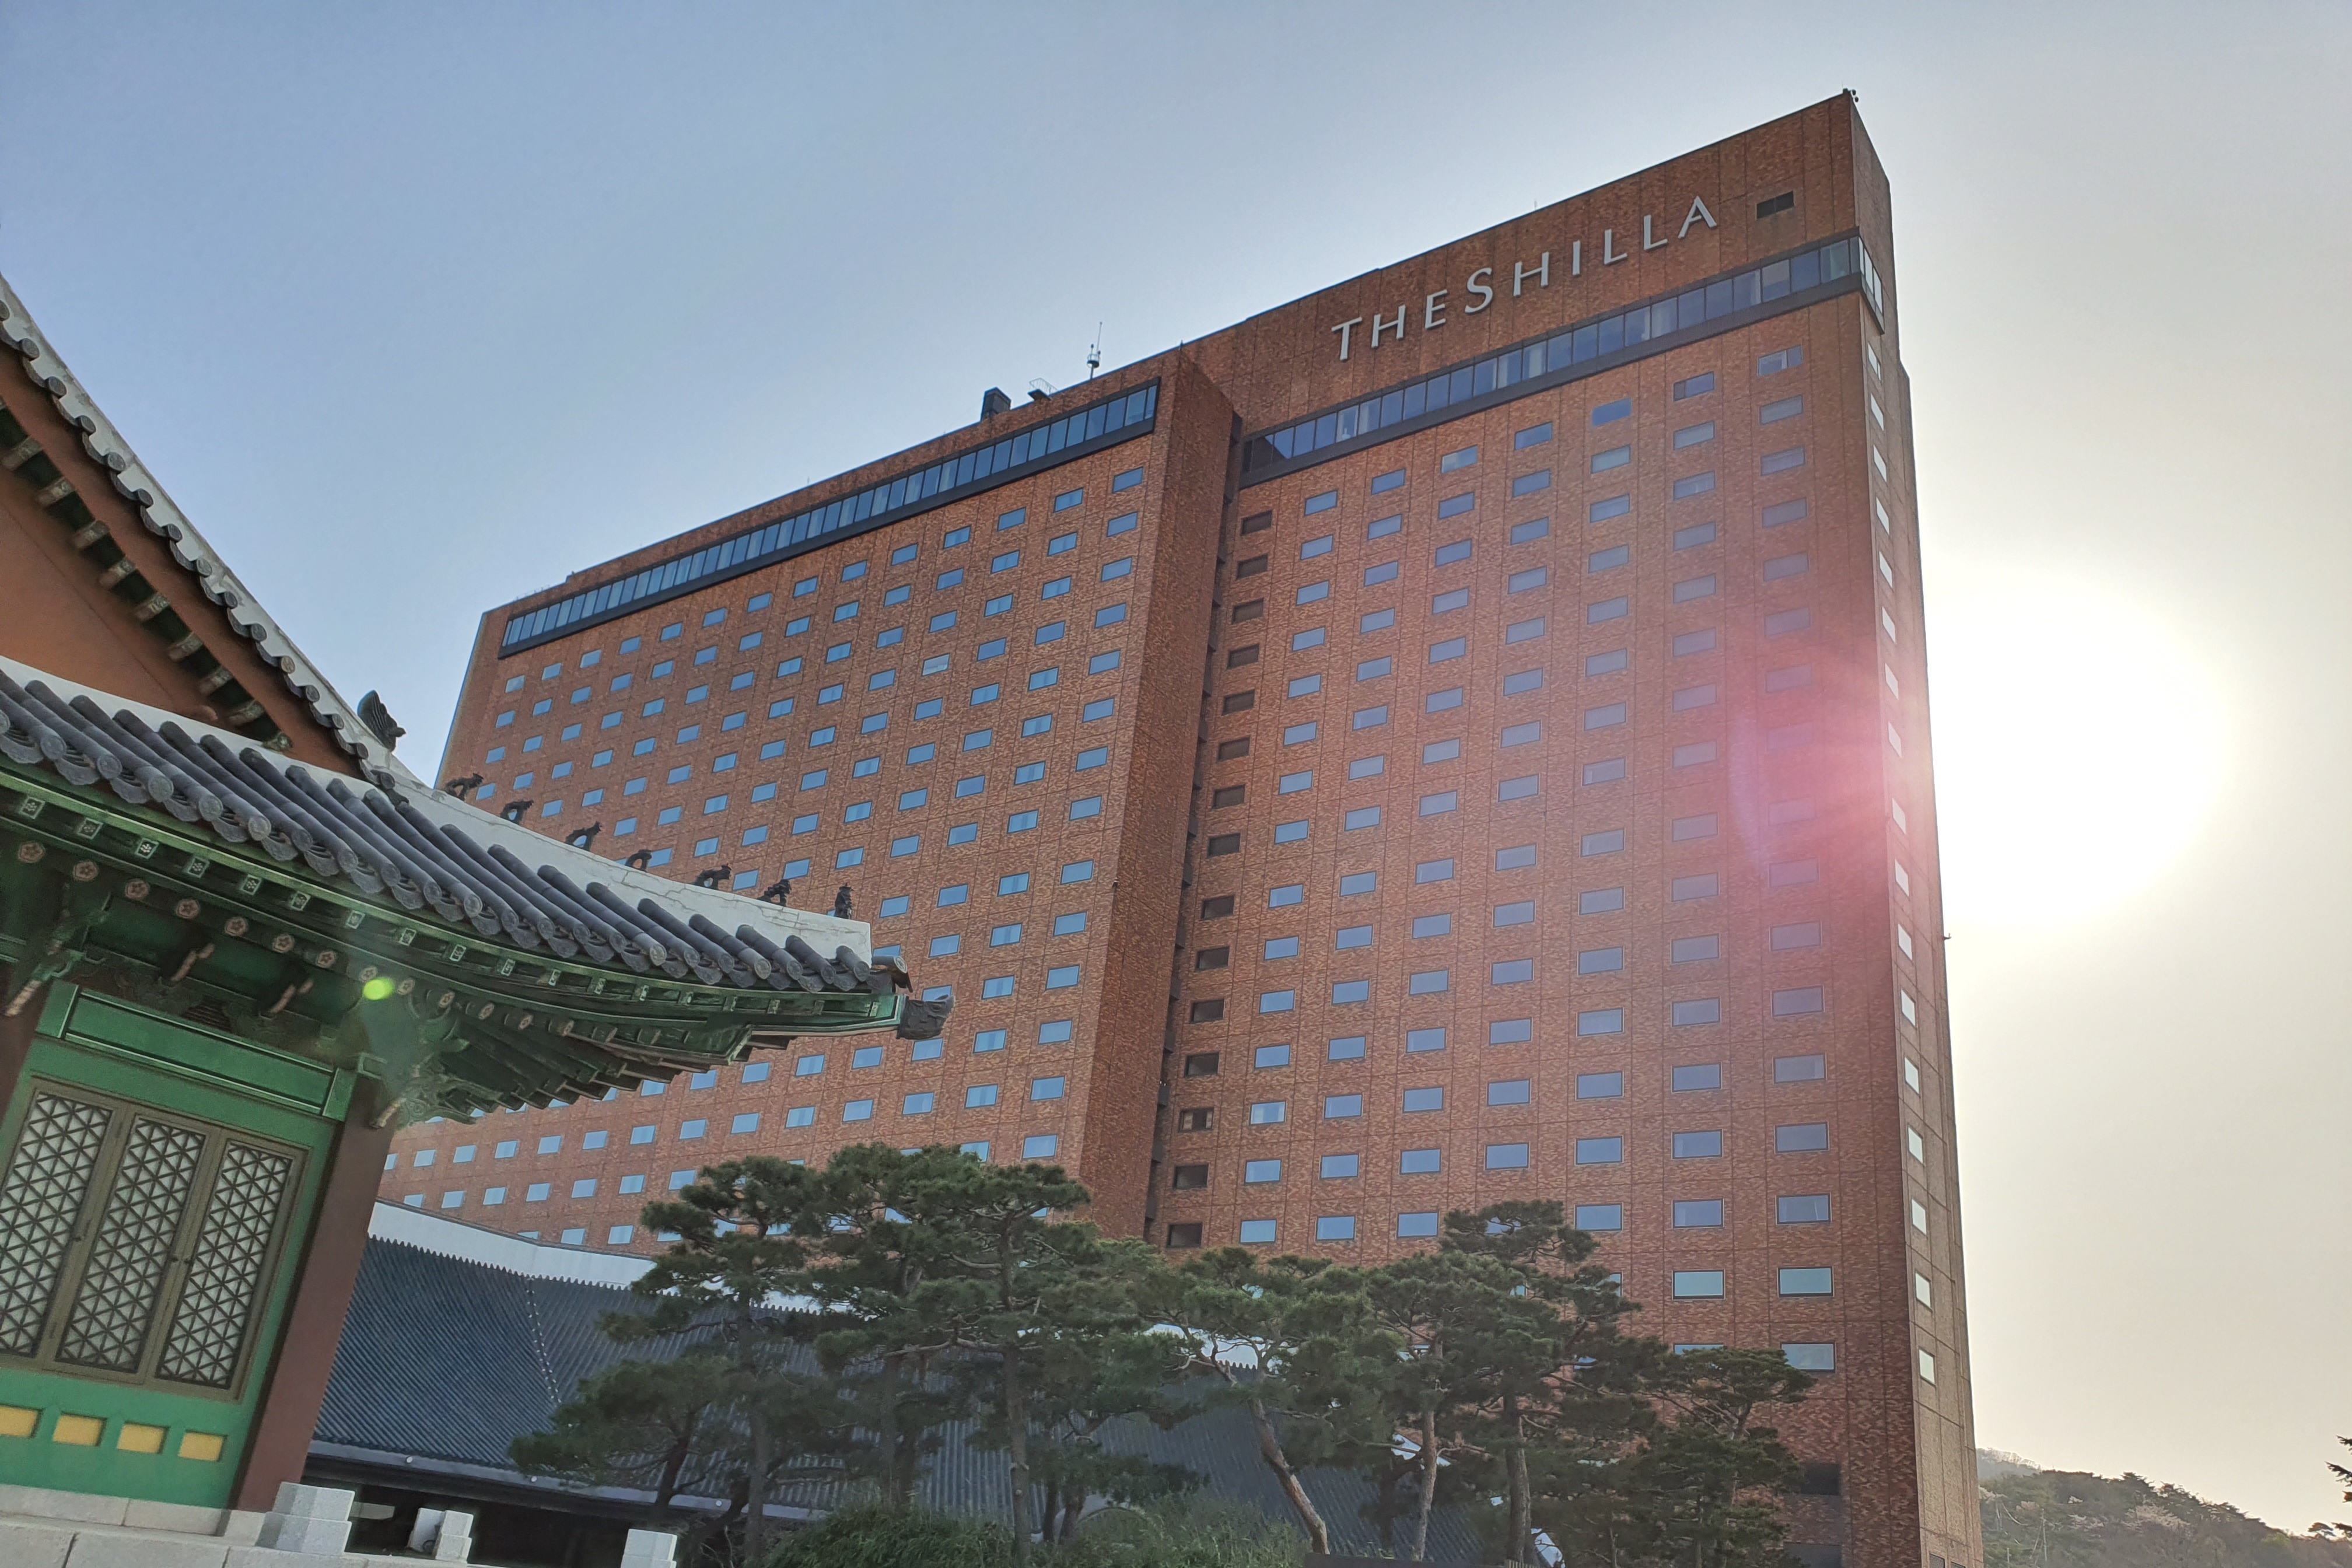 The Shilla Seoul0 : Exterior view of the Hotel Shilla
